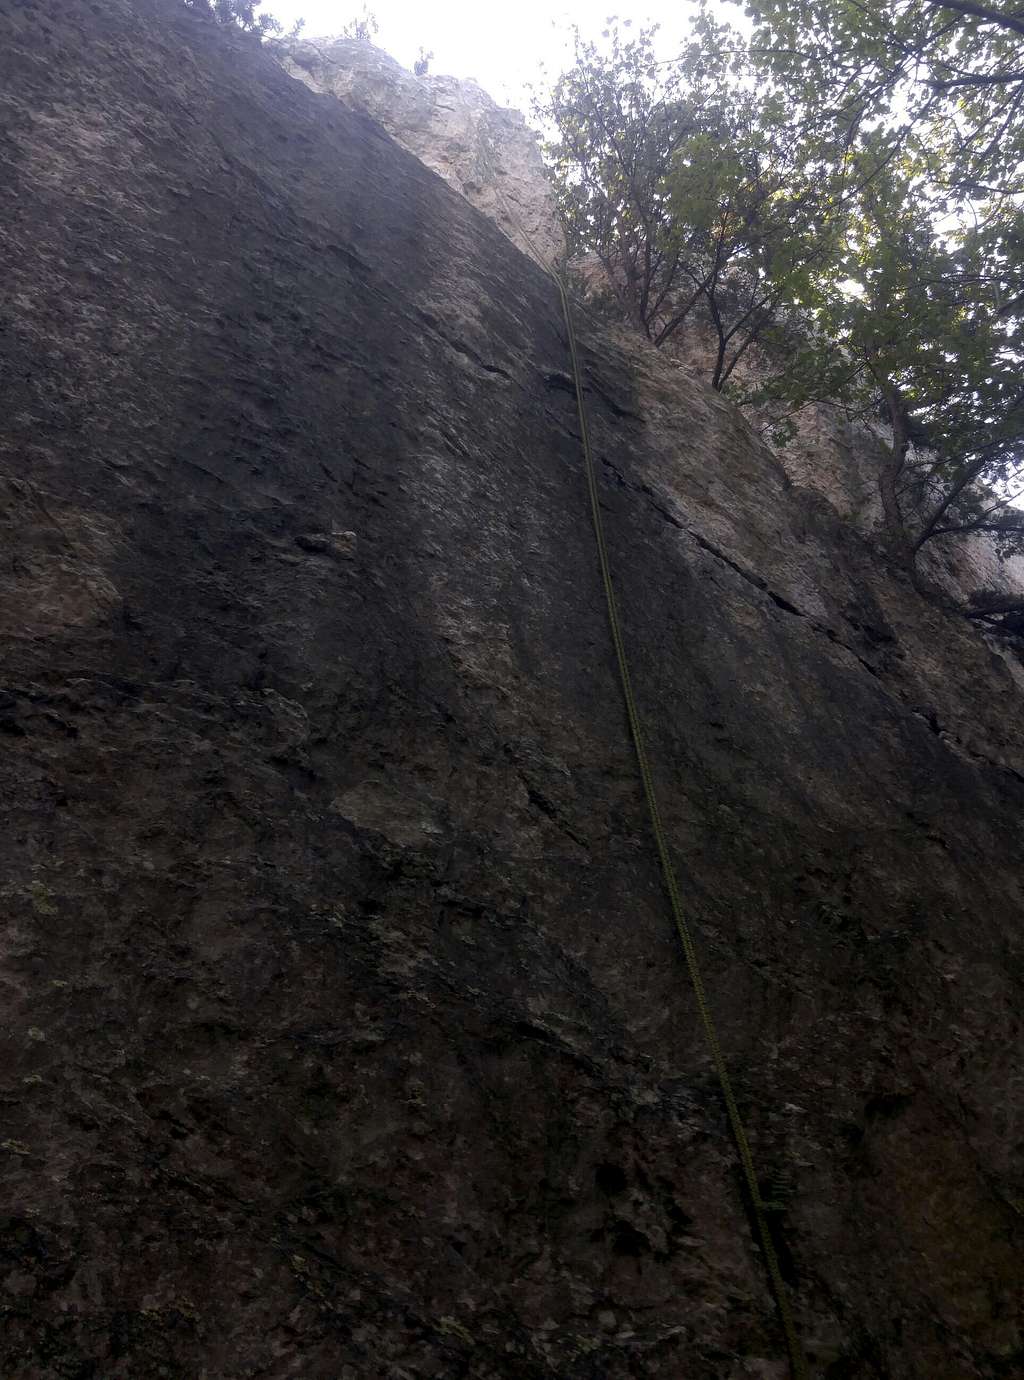 Climber Sensitivity Training Wall (5.8)